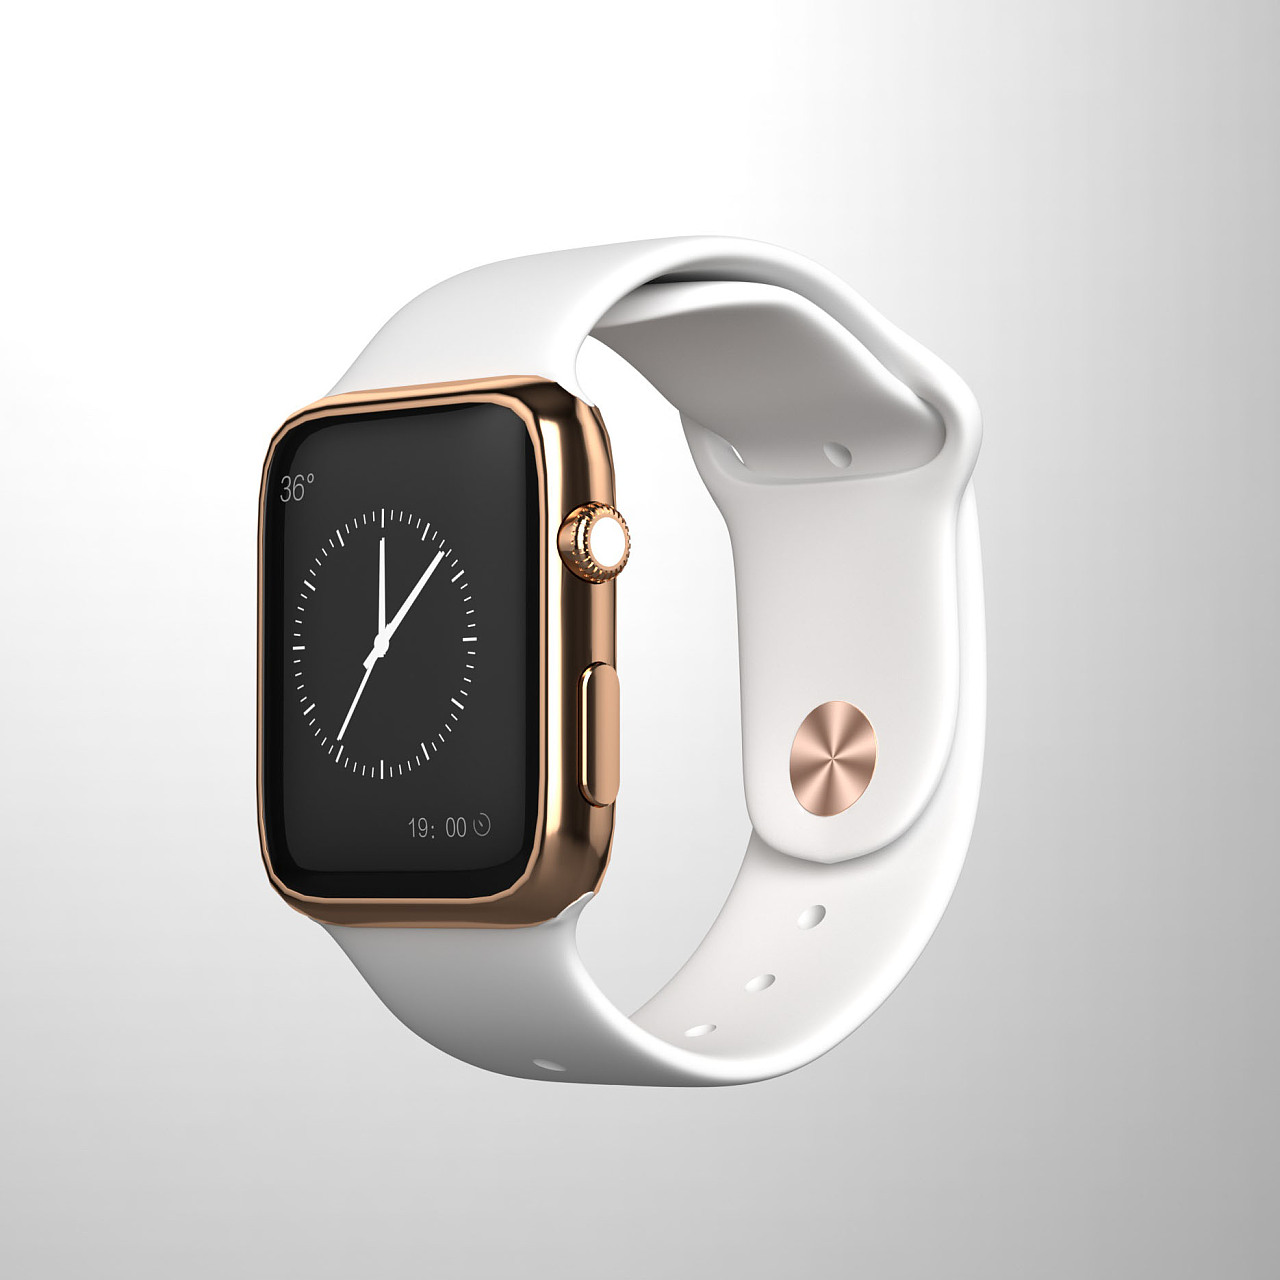 全新尺寸、更大屏幕的 Apple Watch Series 4 发布 – NOWRE现客